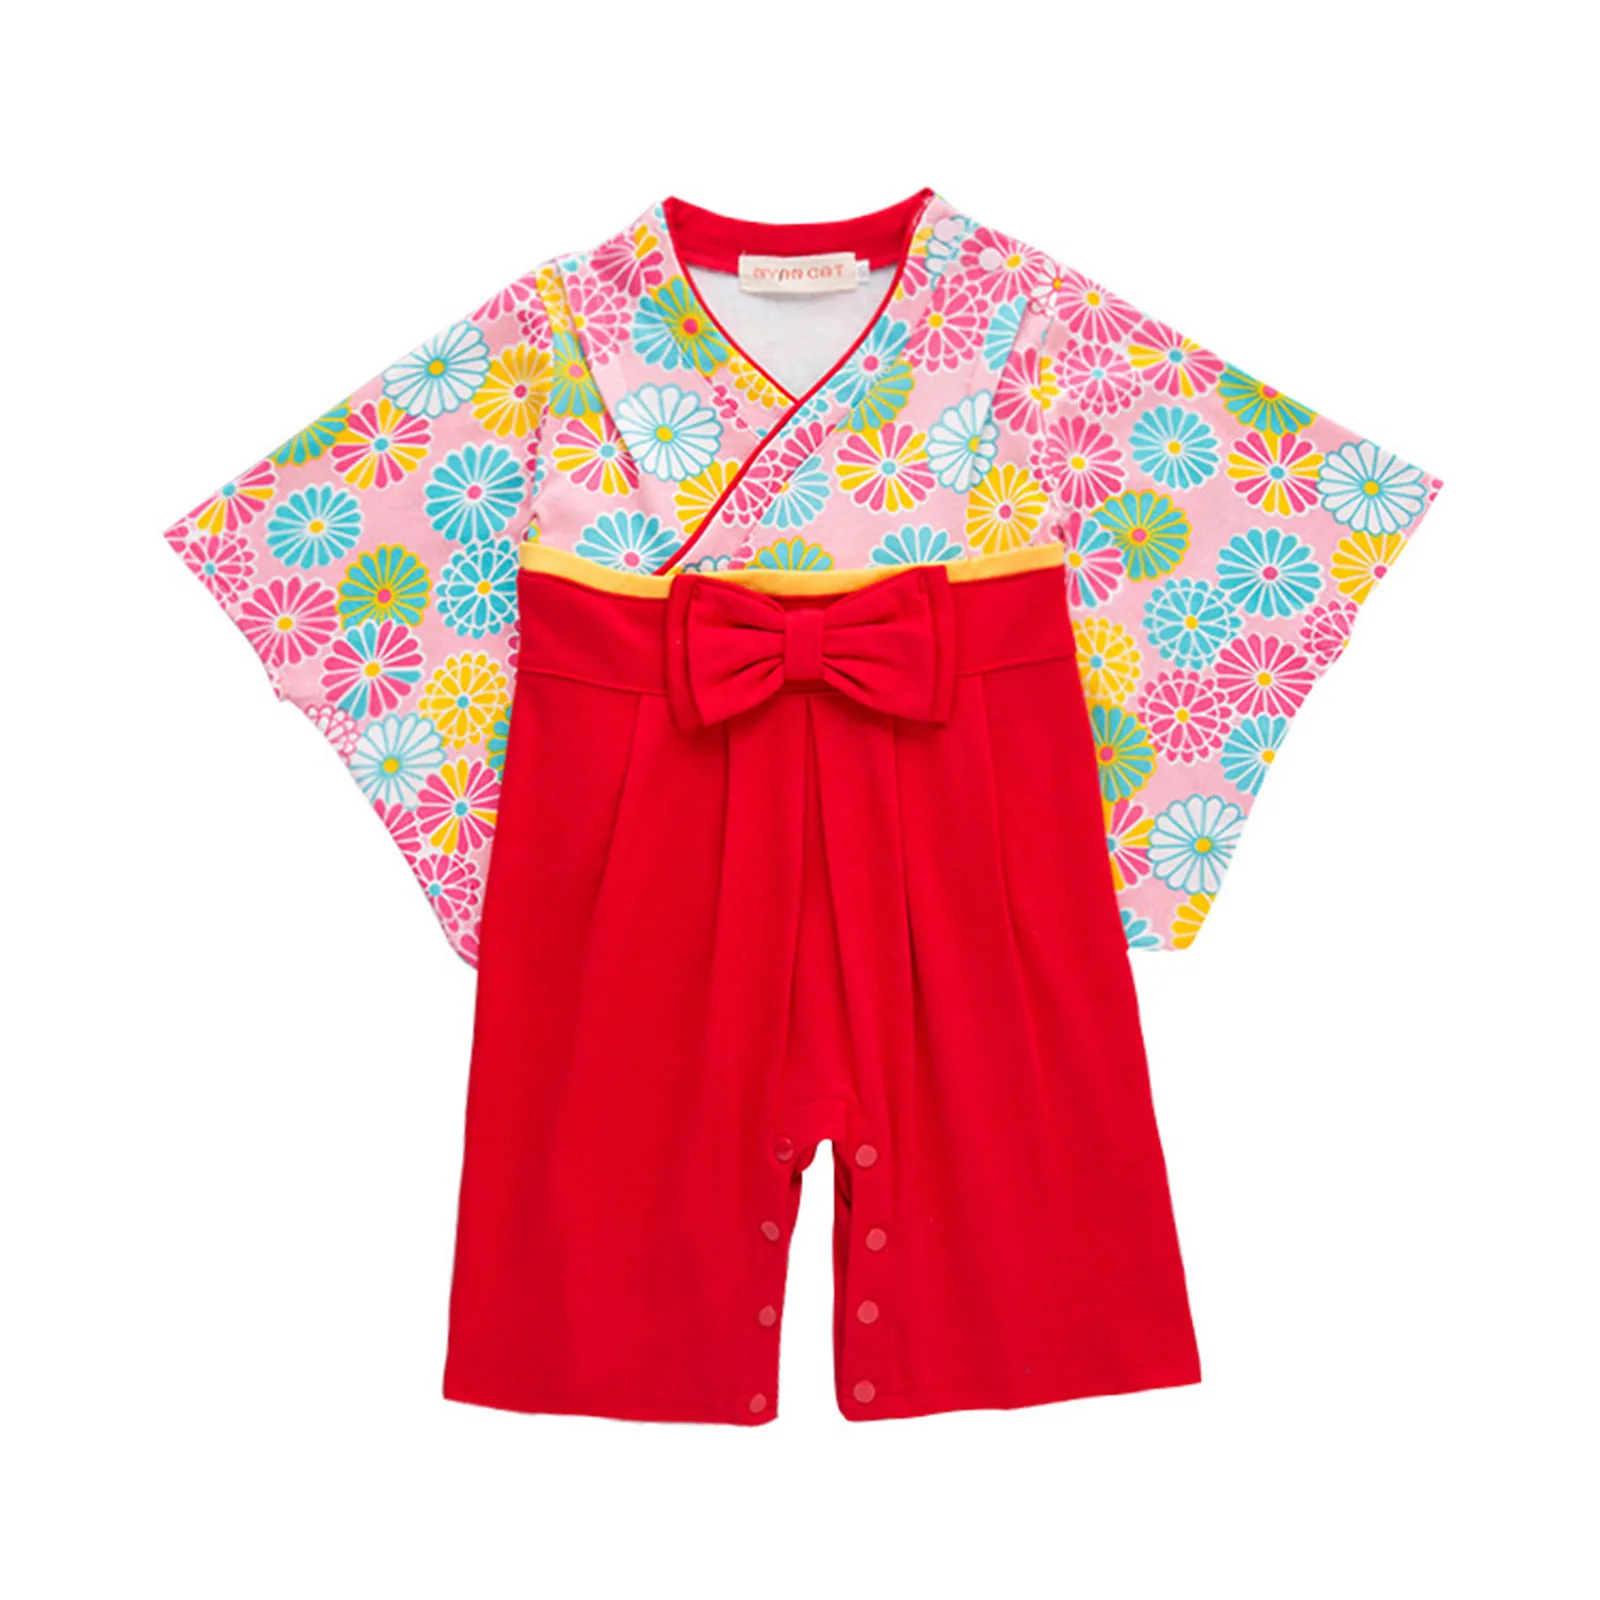 

Bambini neonati vestiti per ragazze cotone floreale fiocco Kimono manica lunga pagliaccetto pigiama vestiti per bambini pagliacc